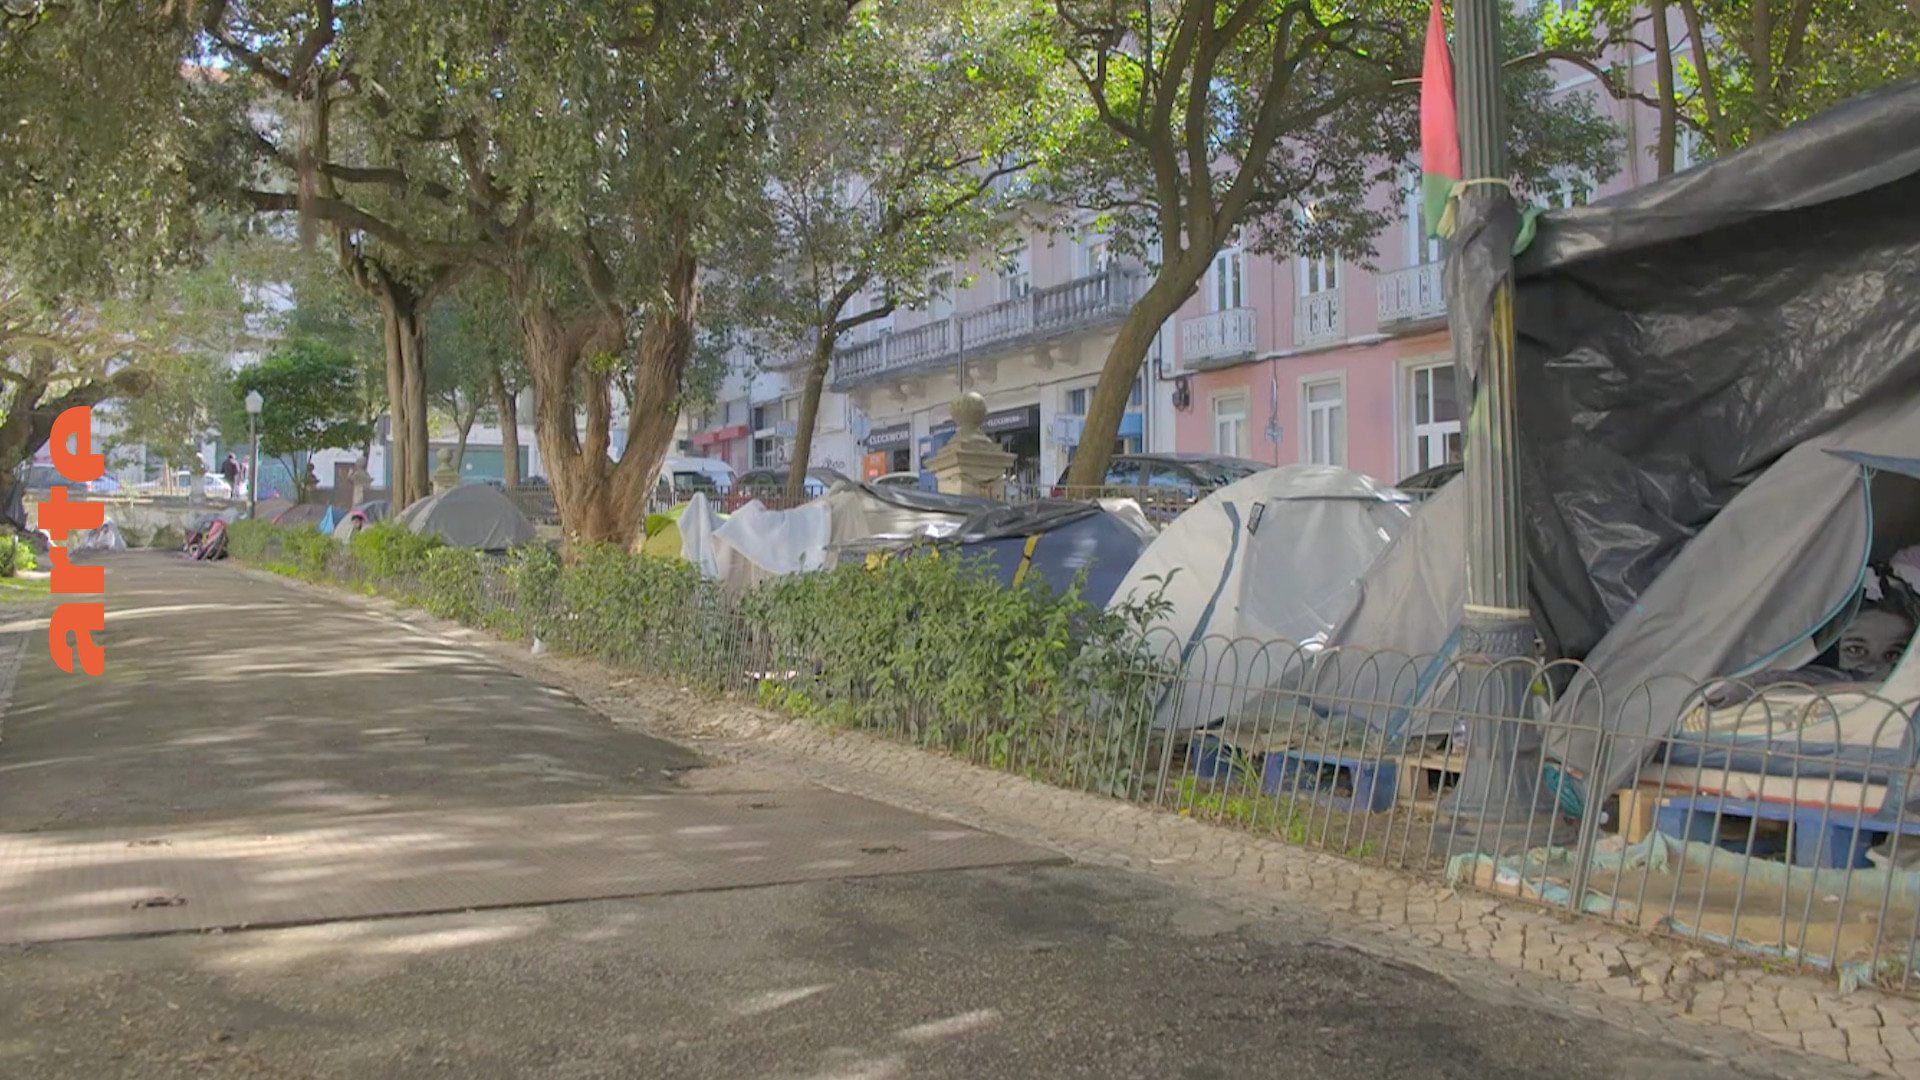 Portugal: Immer mehr Menschen von Wohnungsnot betroffen